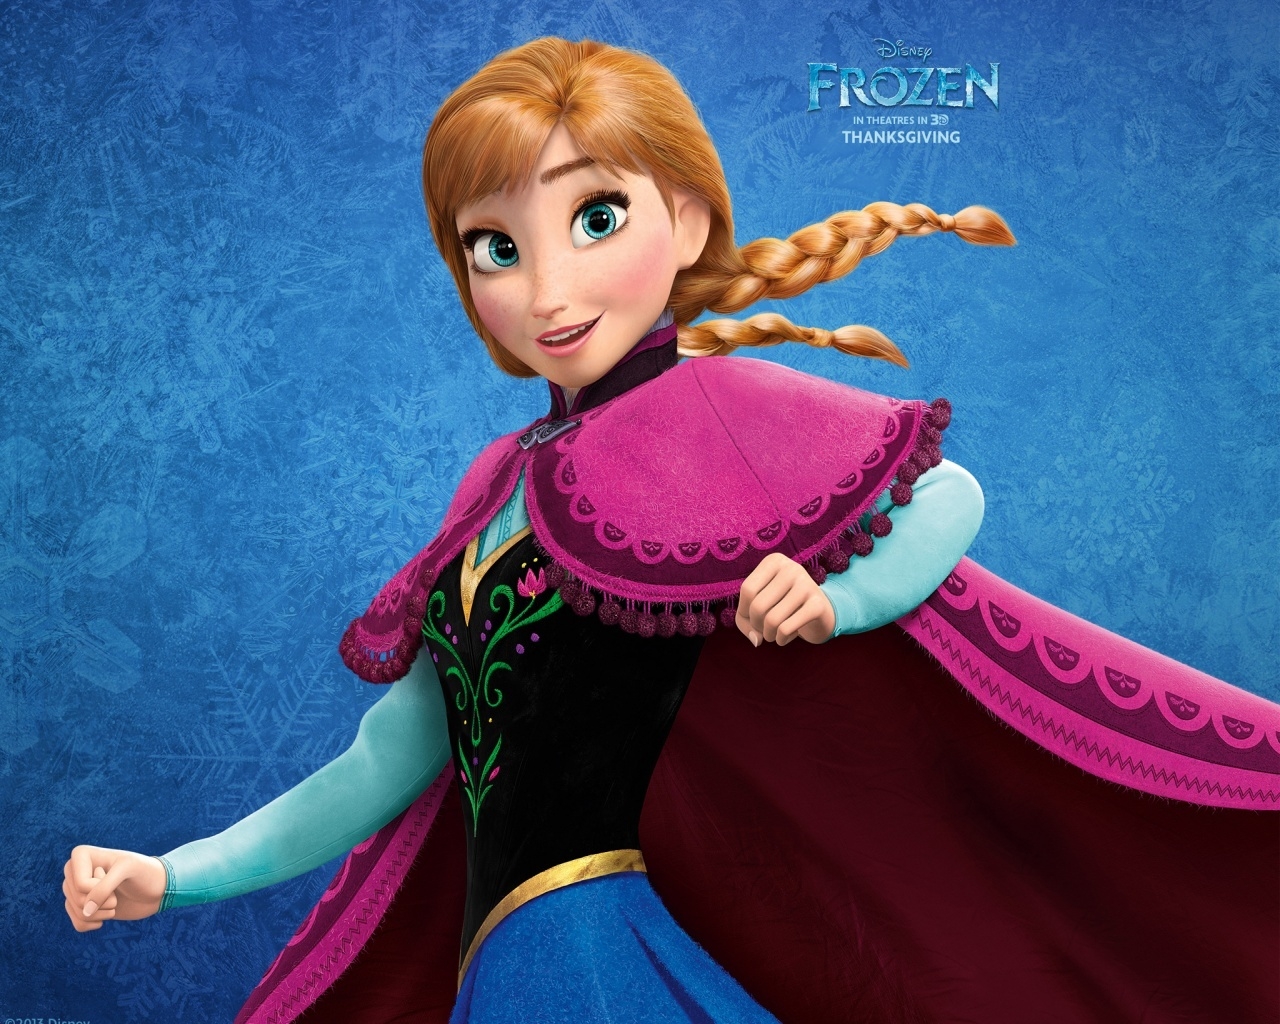 Frozen Anna for 1280 x 1024 resolution